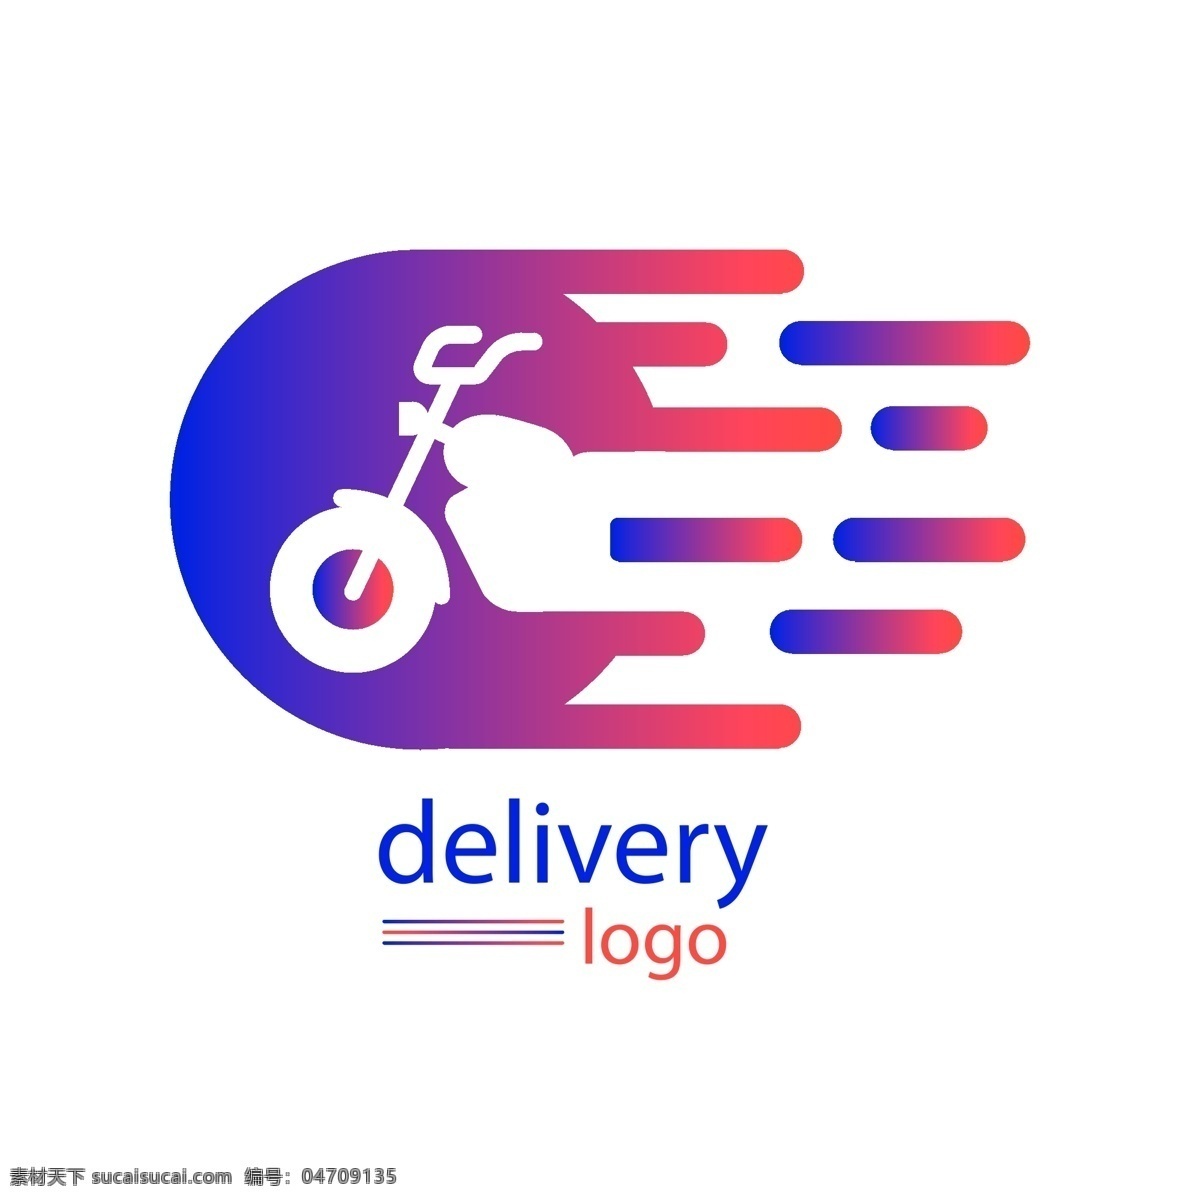 交付 摩托车 logo 模板 delivery 扁平化 logo模板